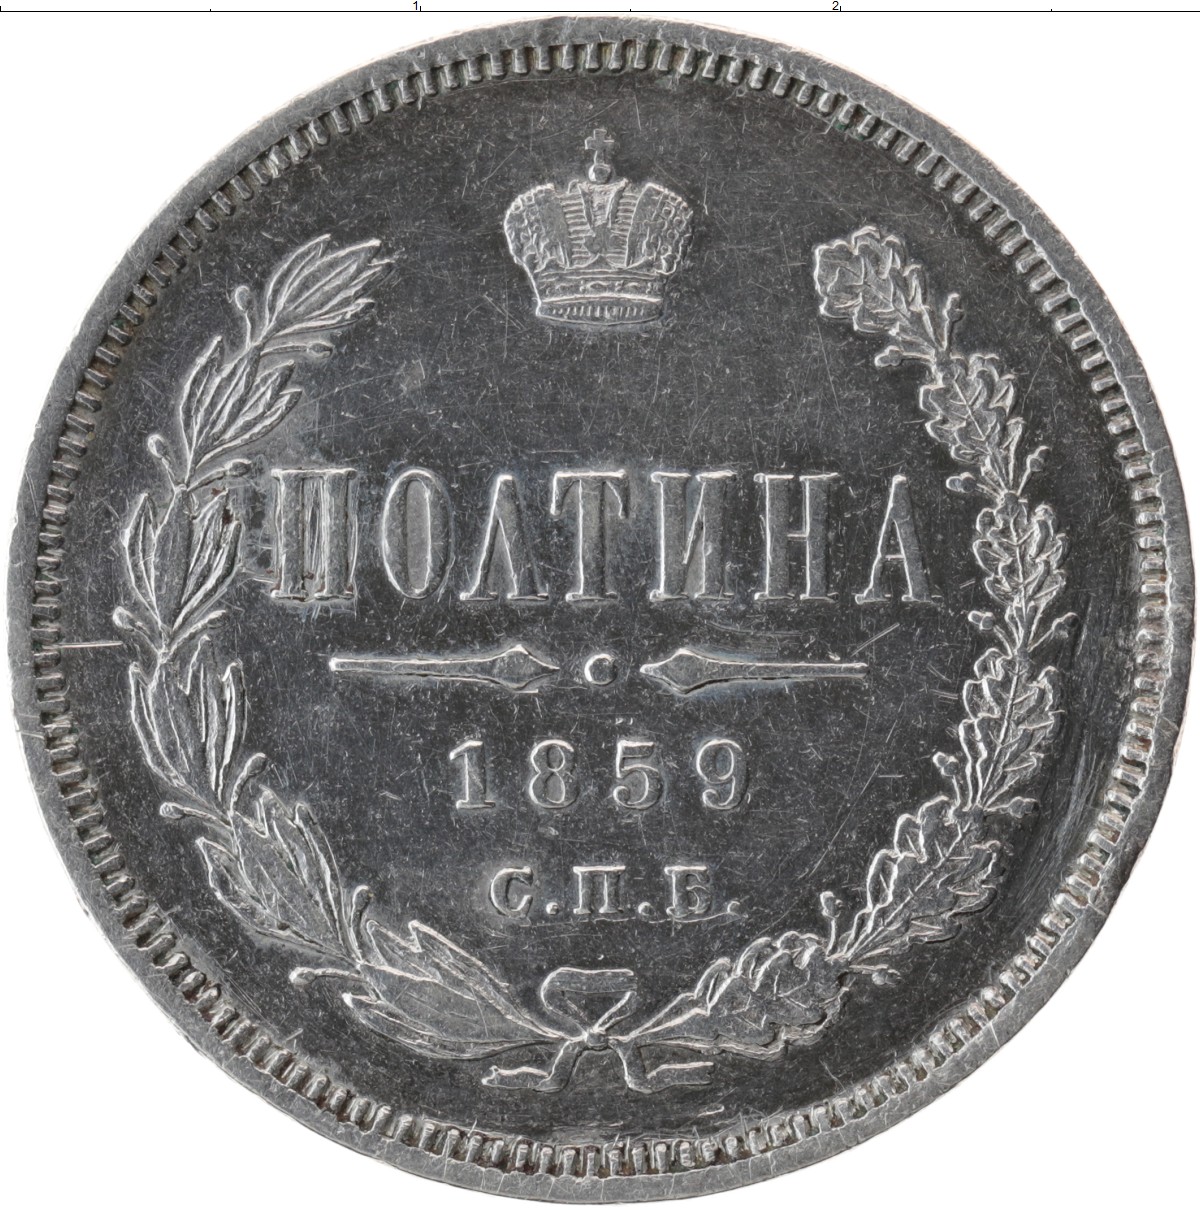 Полтина. Монета полтина государственная. Серебро 1859 h&. Полтина фото.